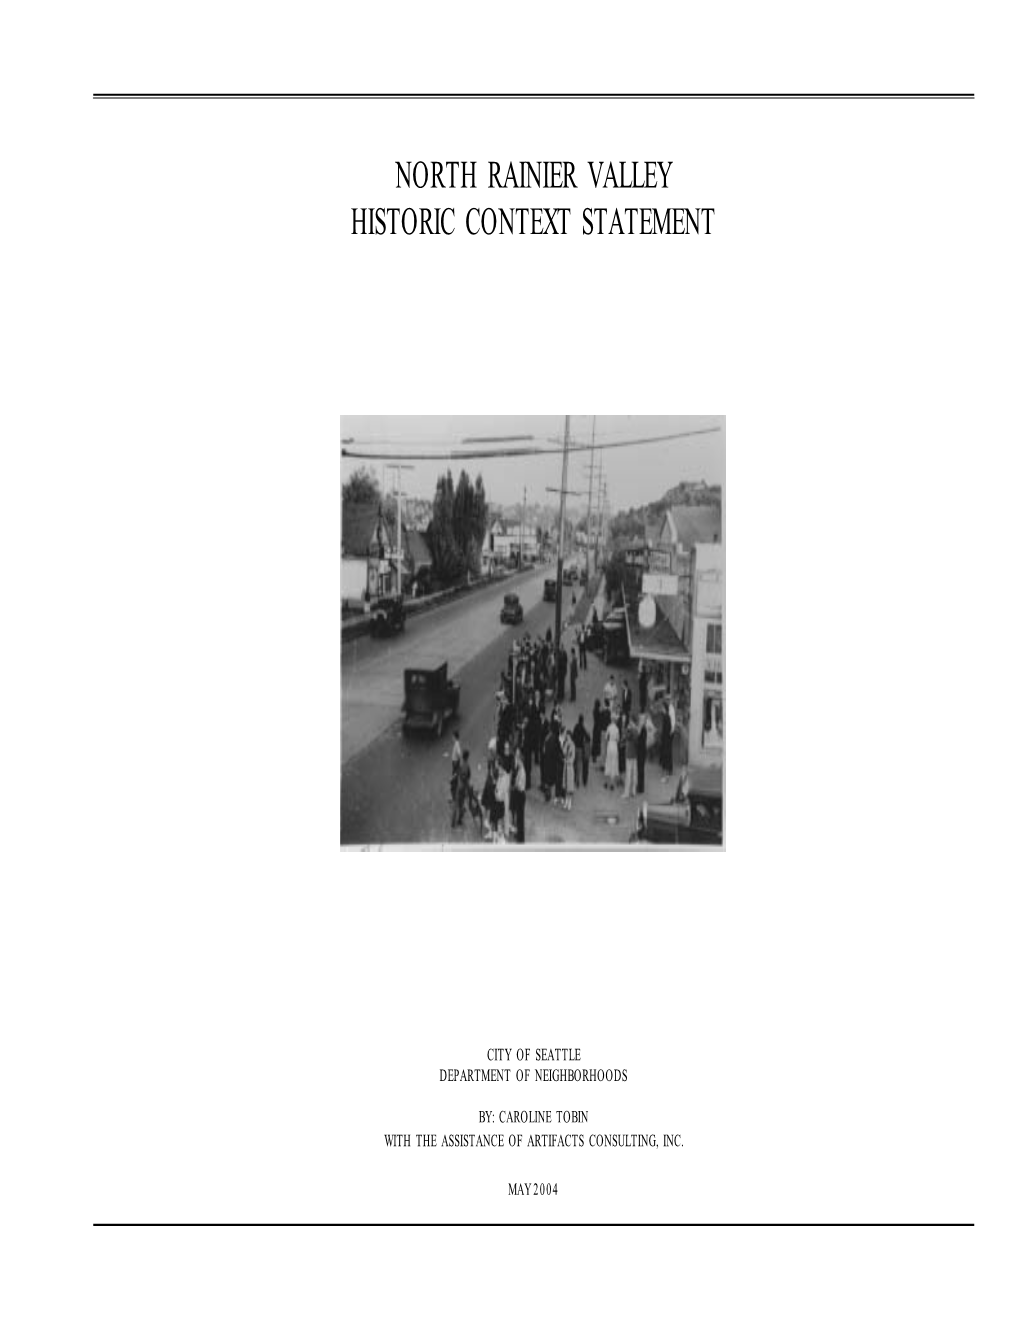 North Rainier Valley Historic Context Statement